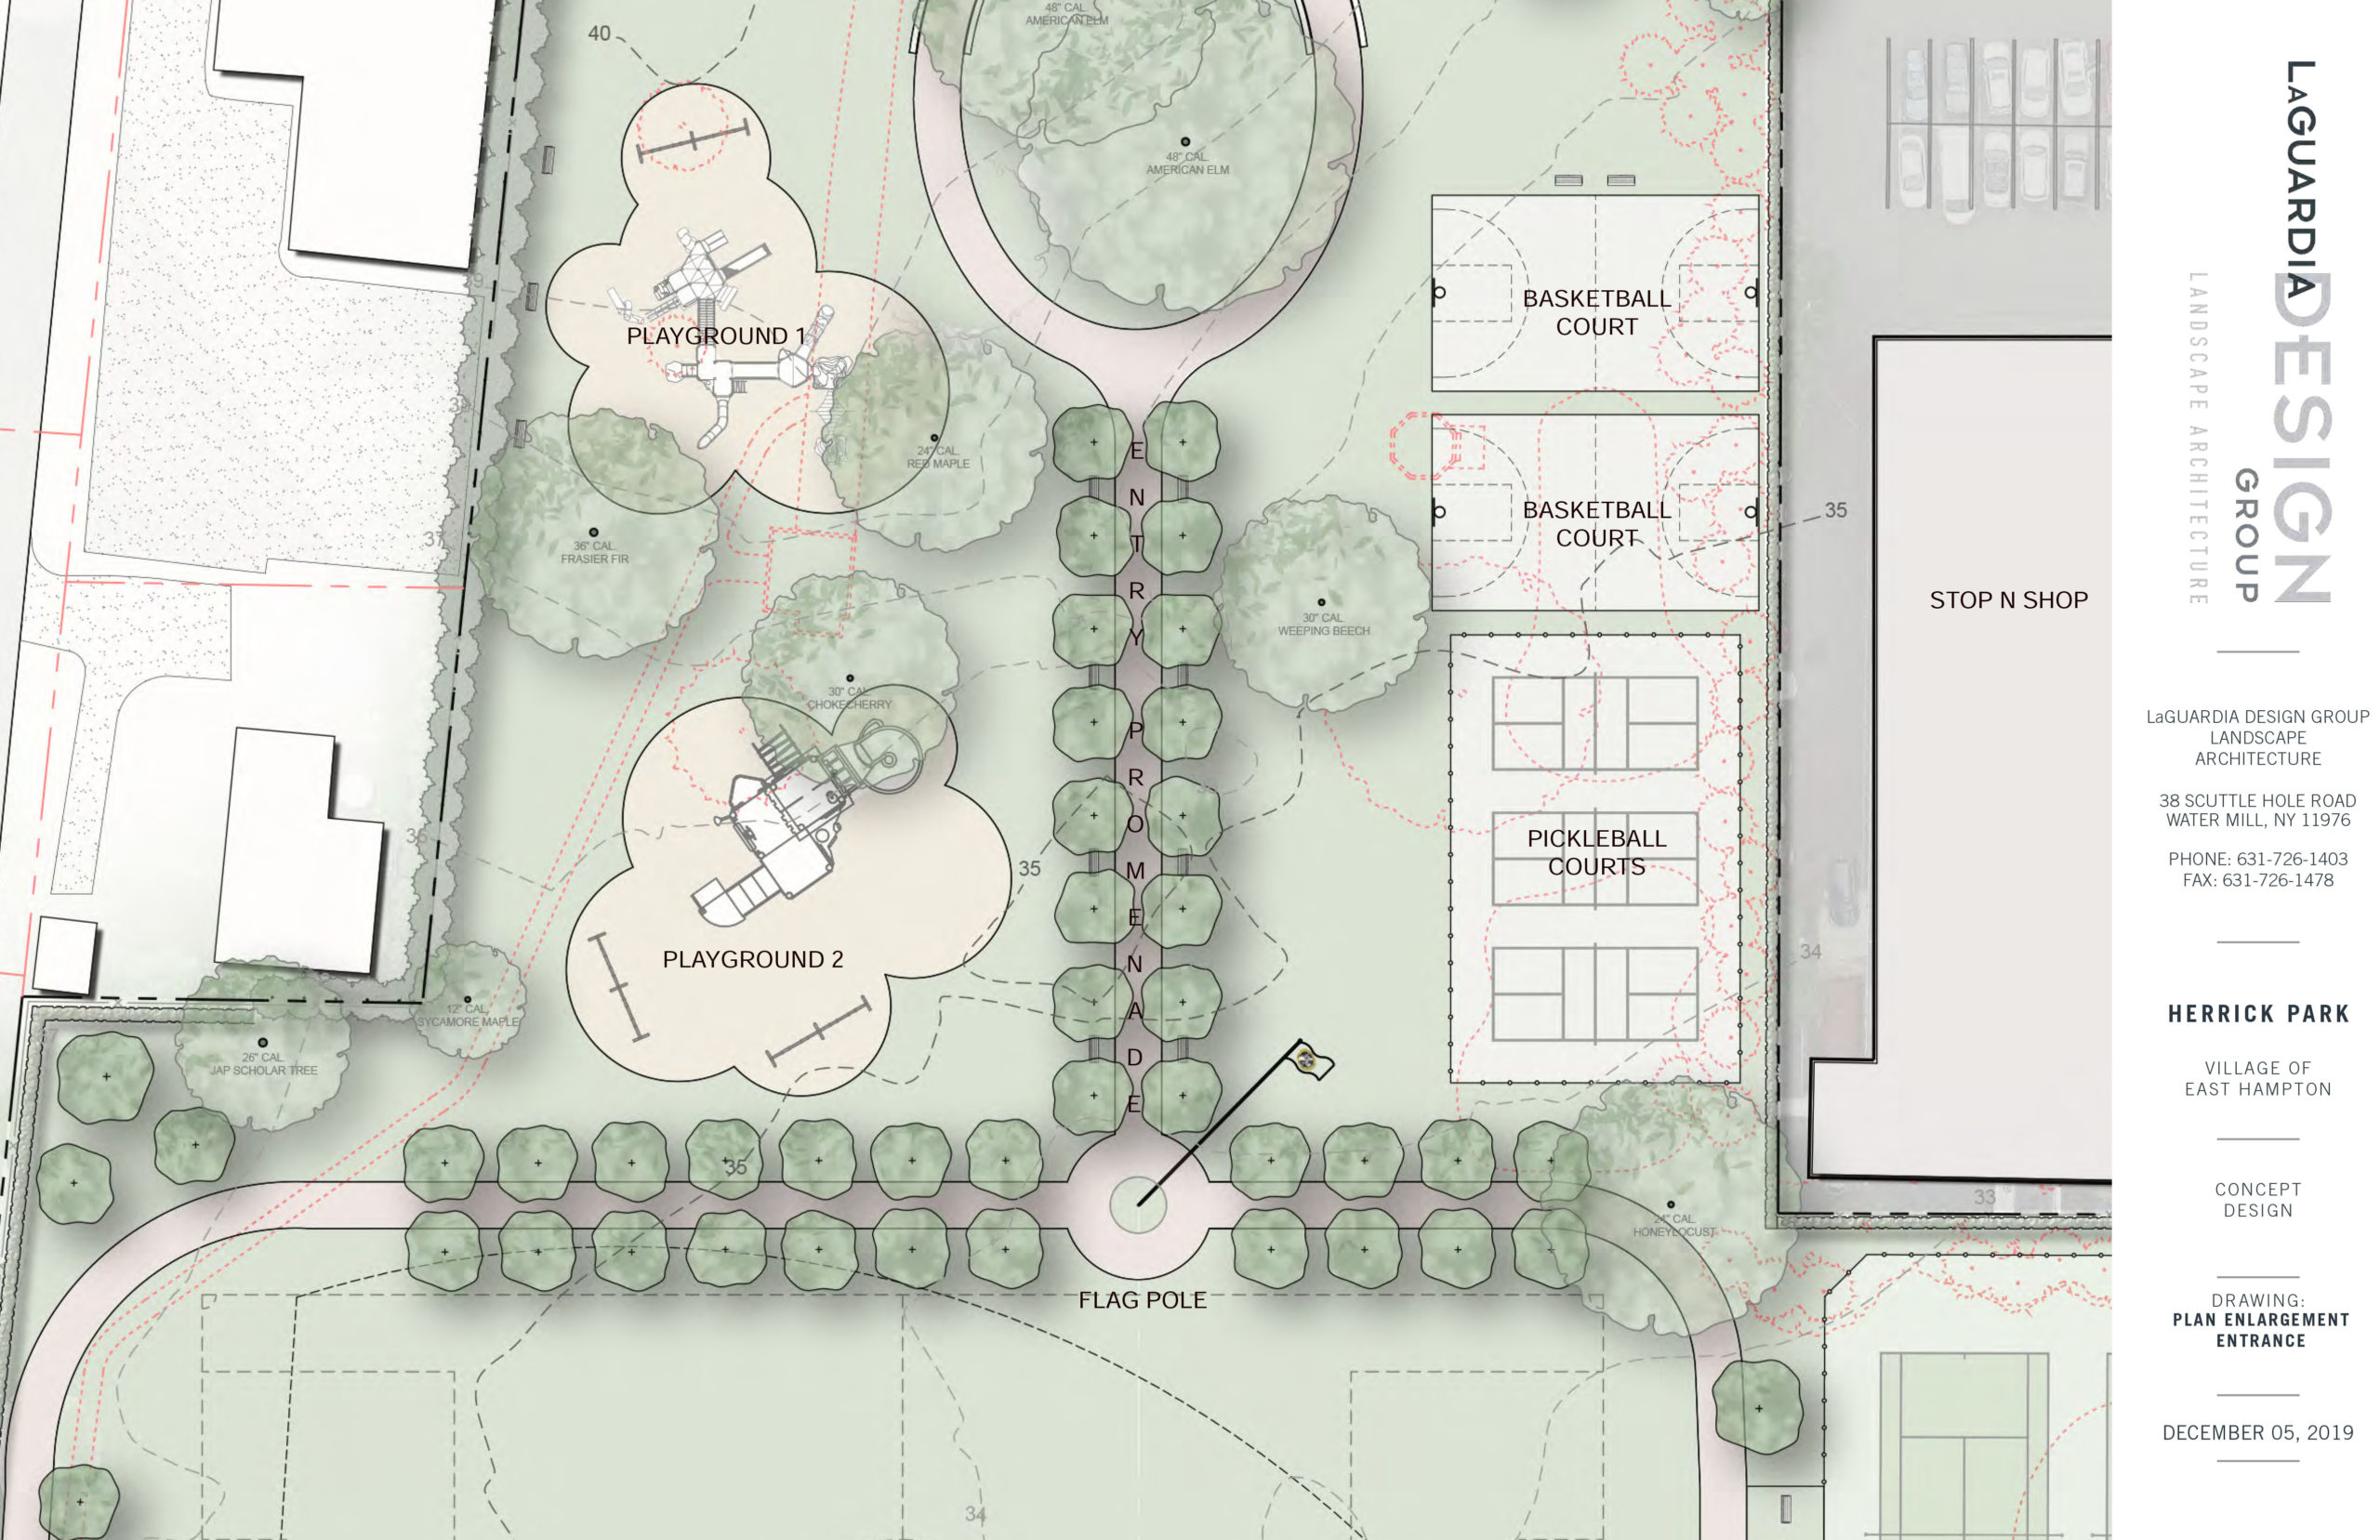 Conceptual plans for Herrick Park.      LaGuardia Design Group